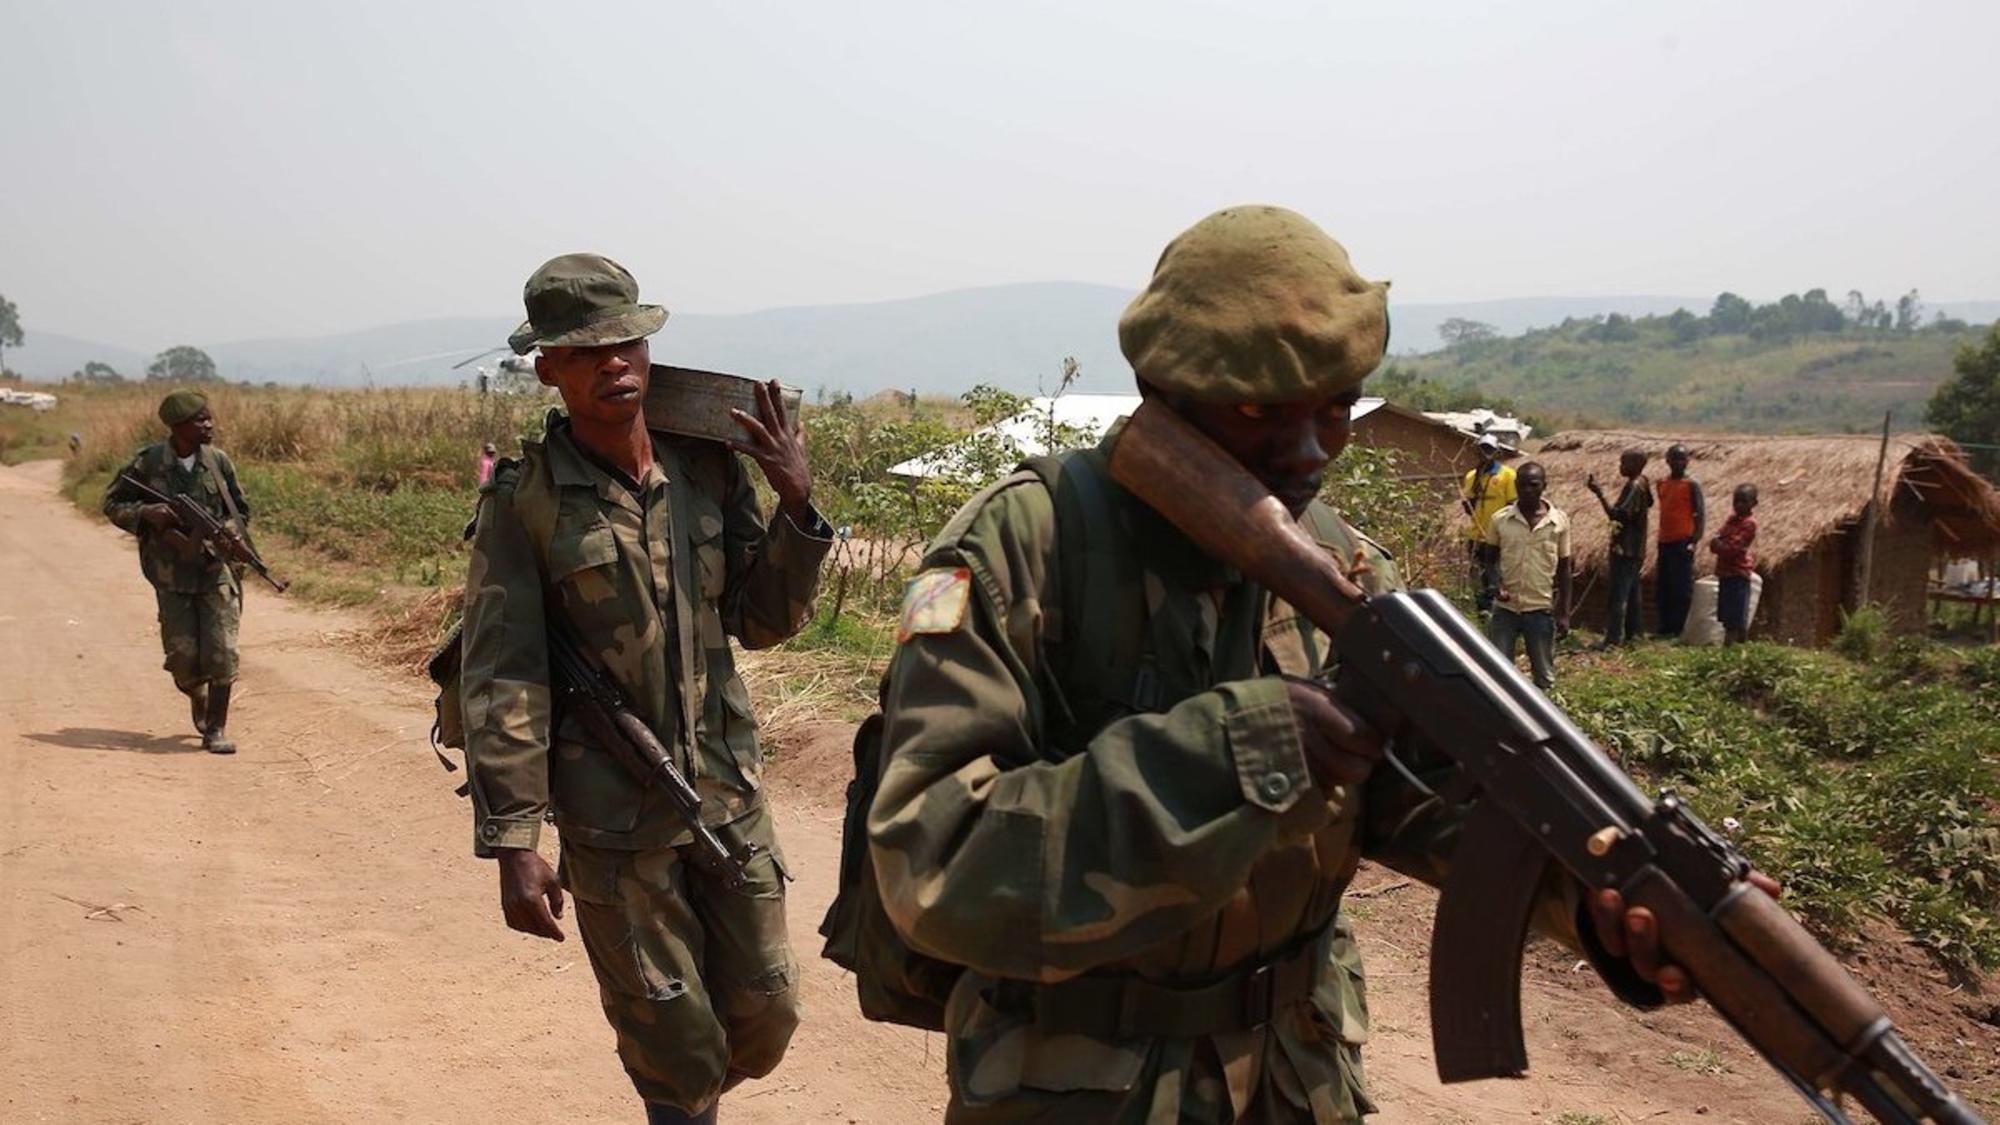 Soldados de las Fuerzas Armadas realizando patrulla en el Congo, 2015. Fuente: Beyond Nuclear International 